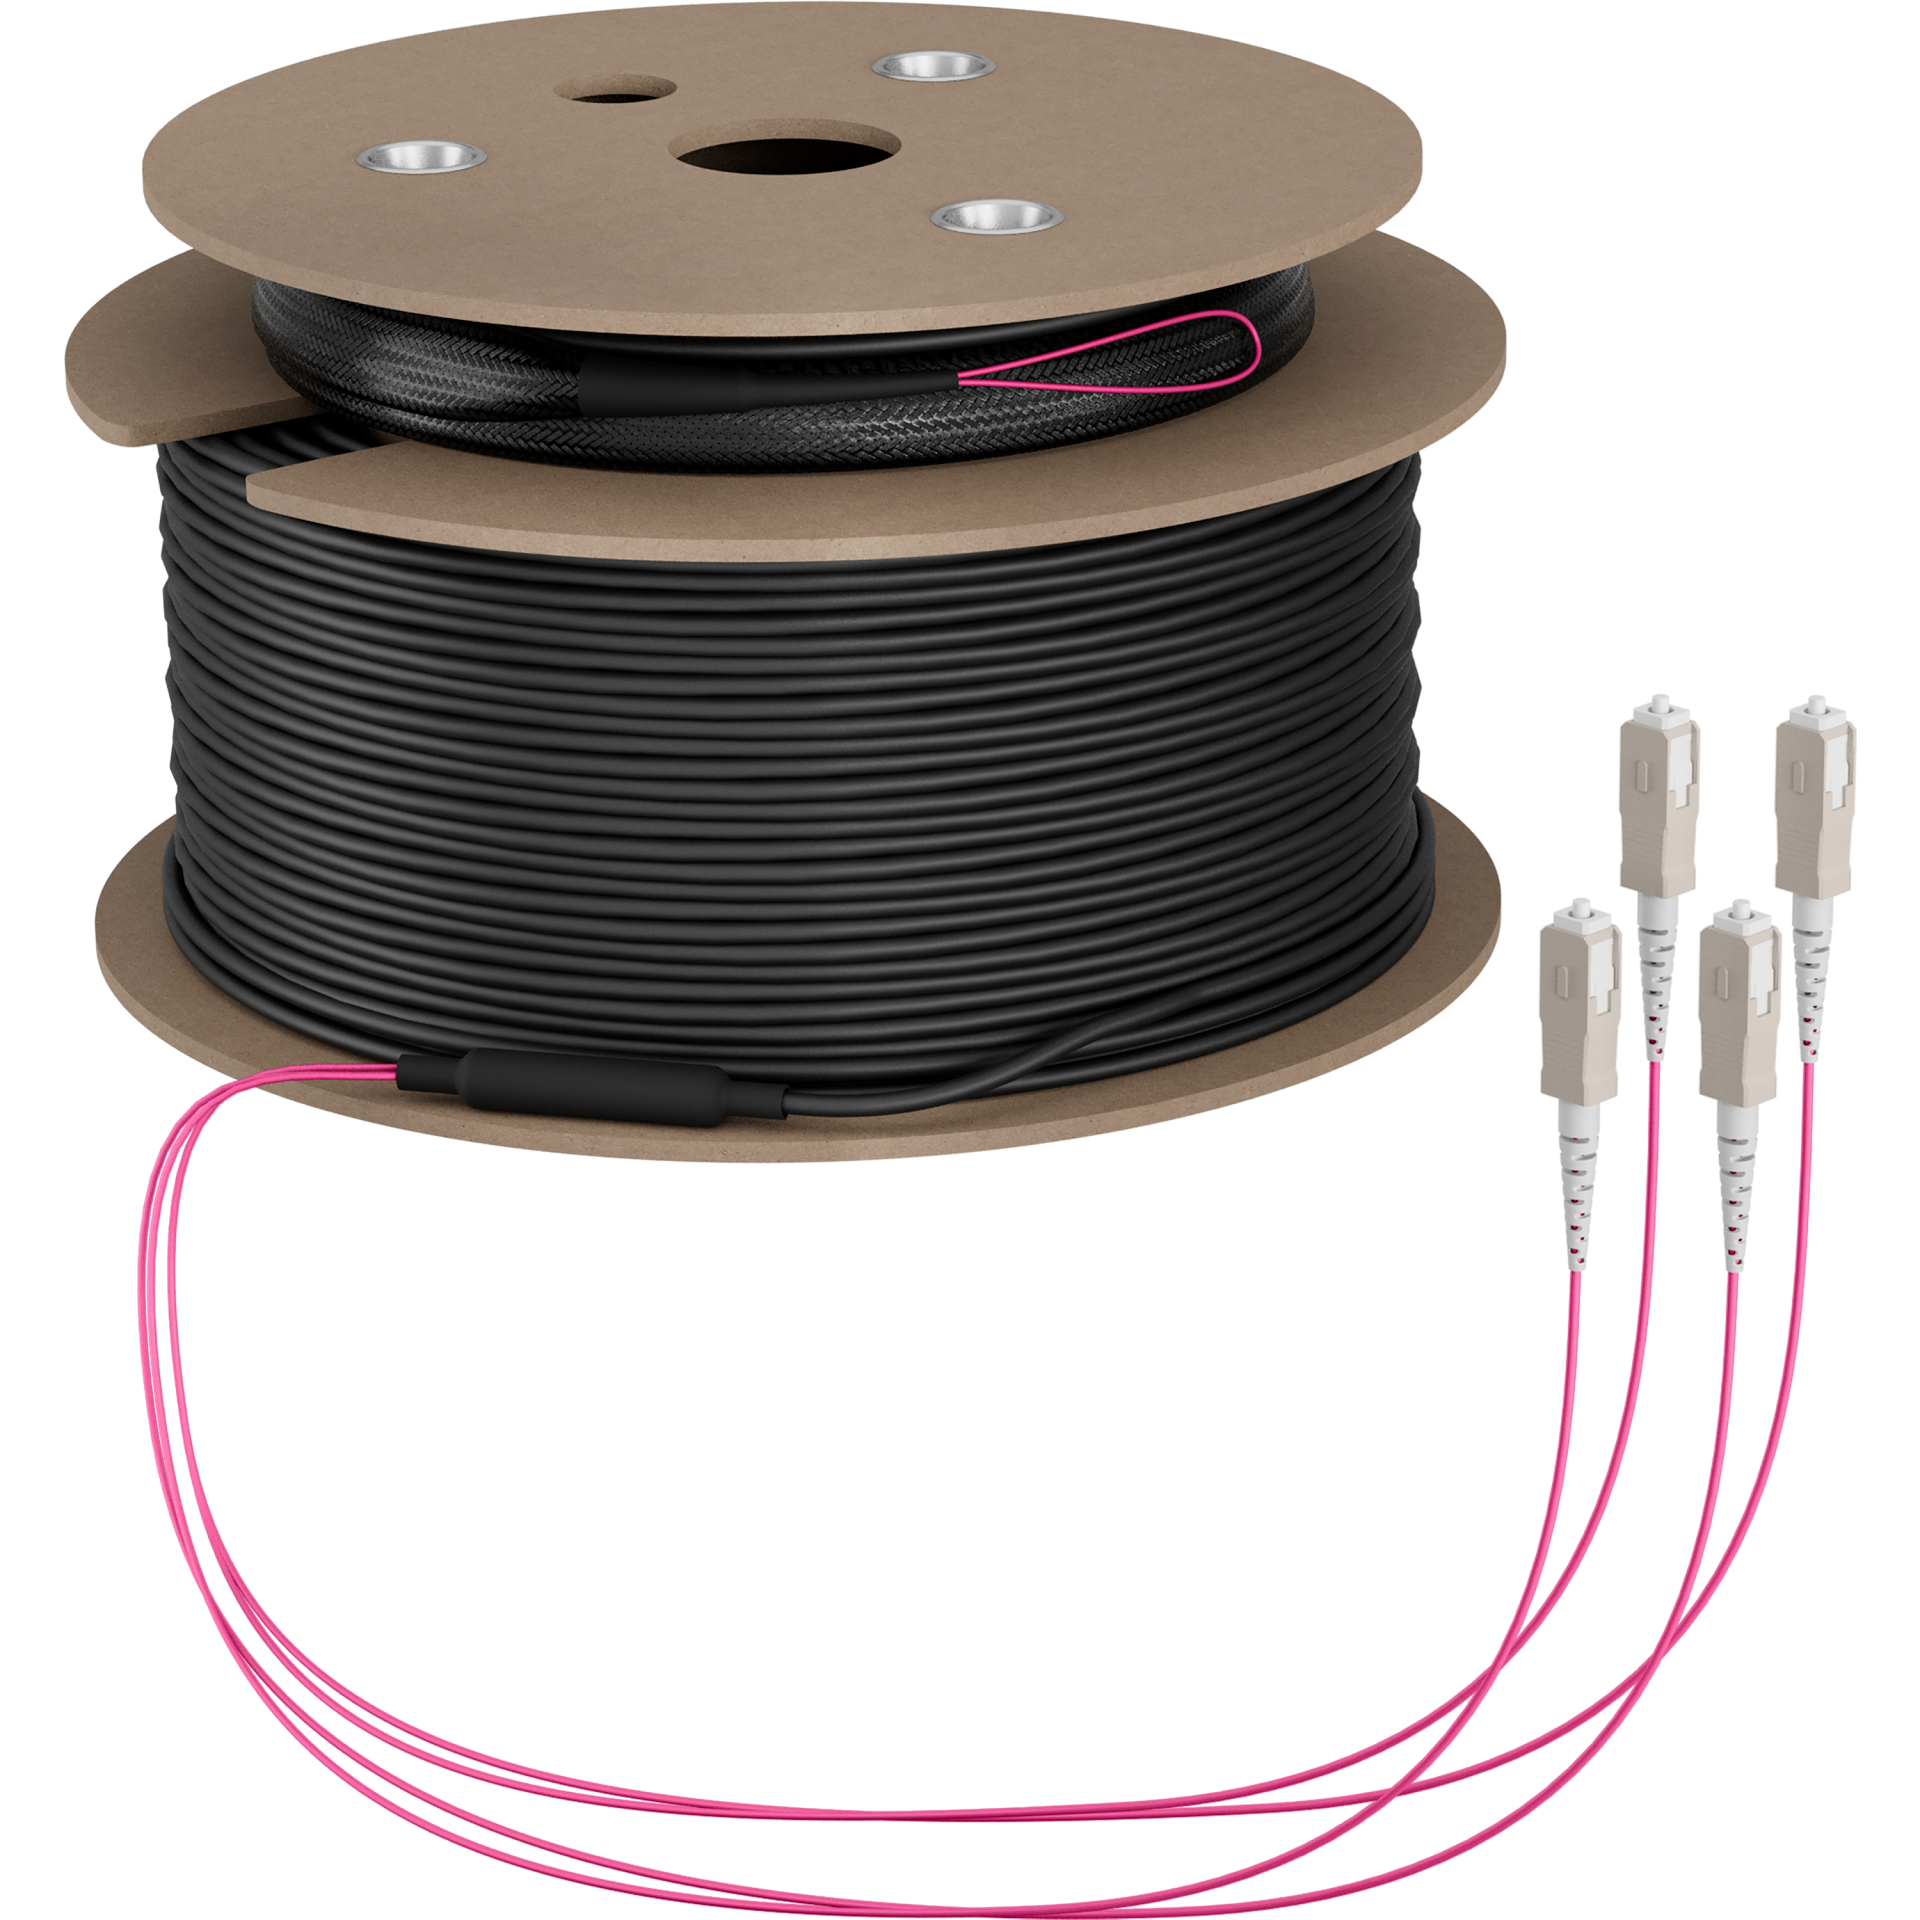 Trunk cable U-DQ(ZN)BH OM4 4G (1x4) SC-SC,150m Dca LSZH